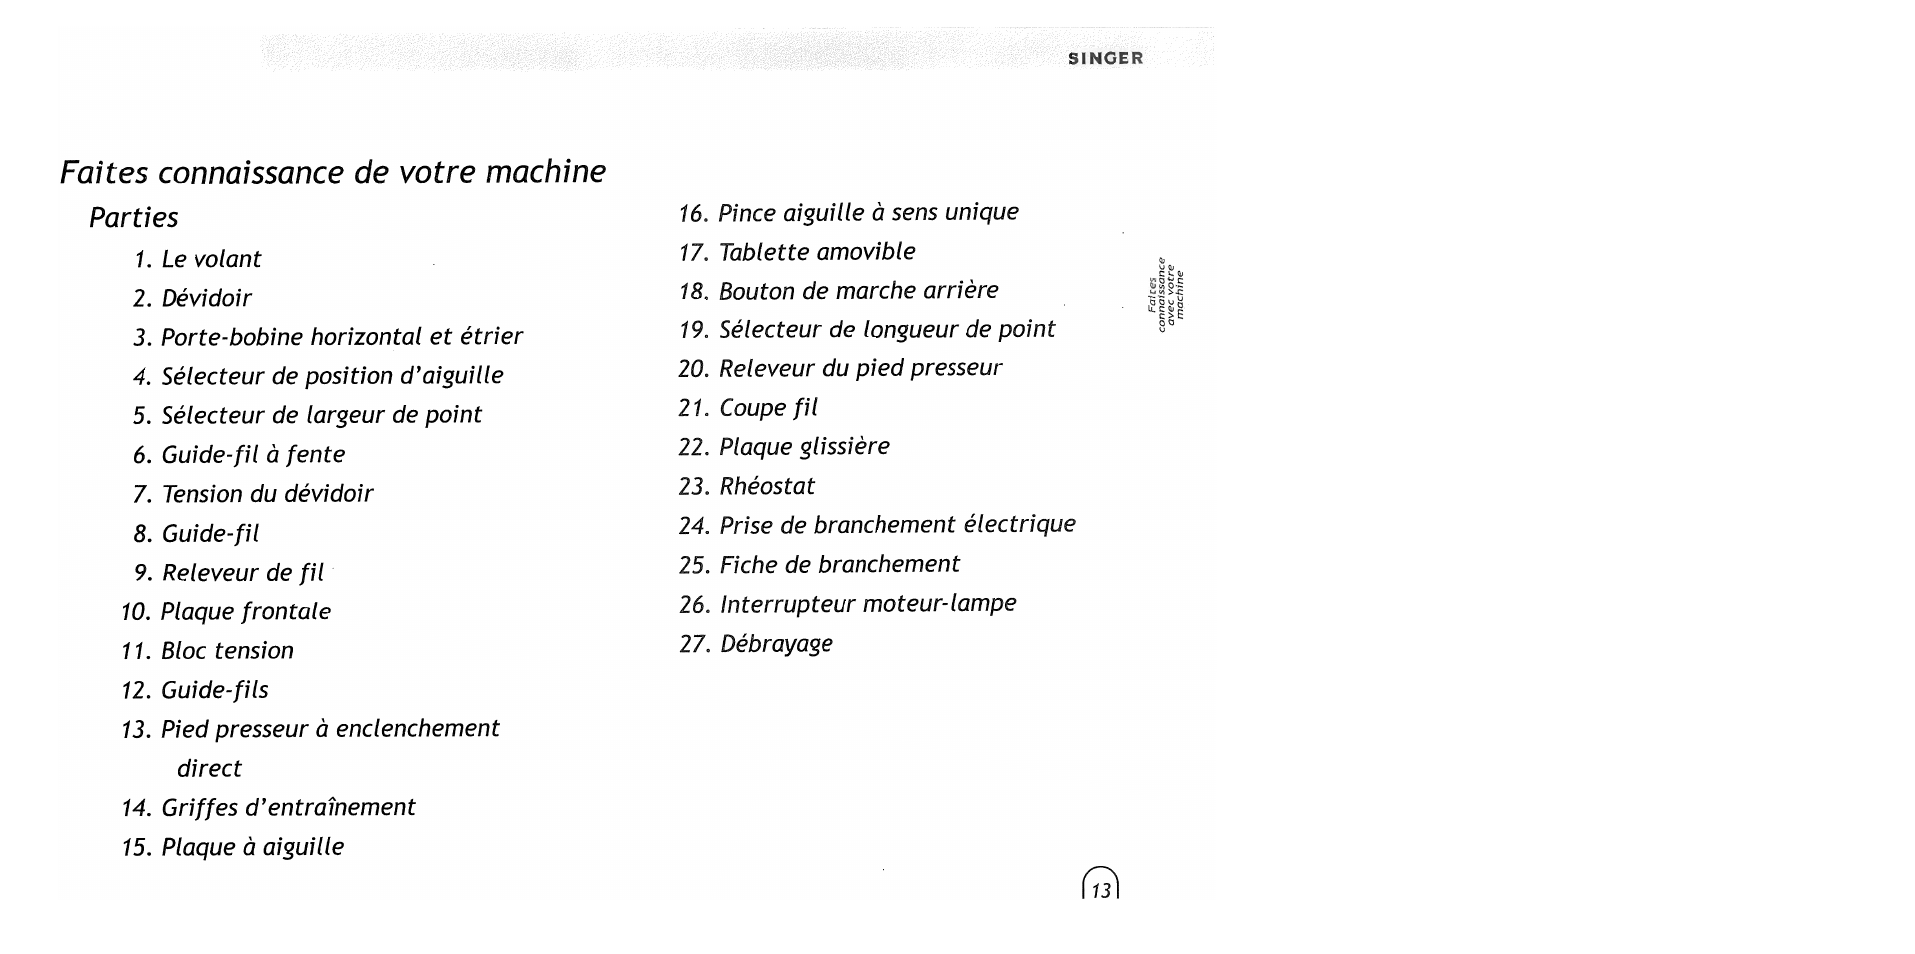 Faites connaissance de votre machine, Faites connaissance avec votre machine | SINGER 2517 Merritt User Manual | Page 15 / 80